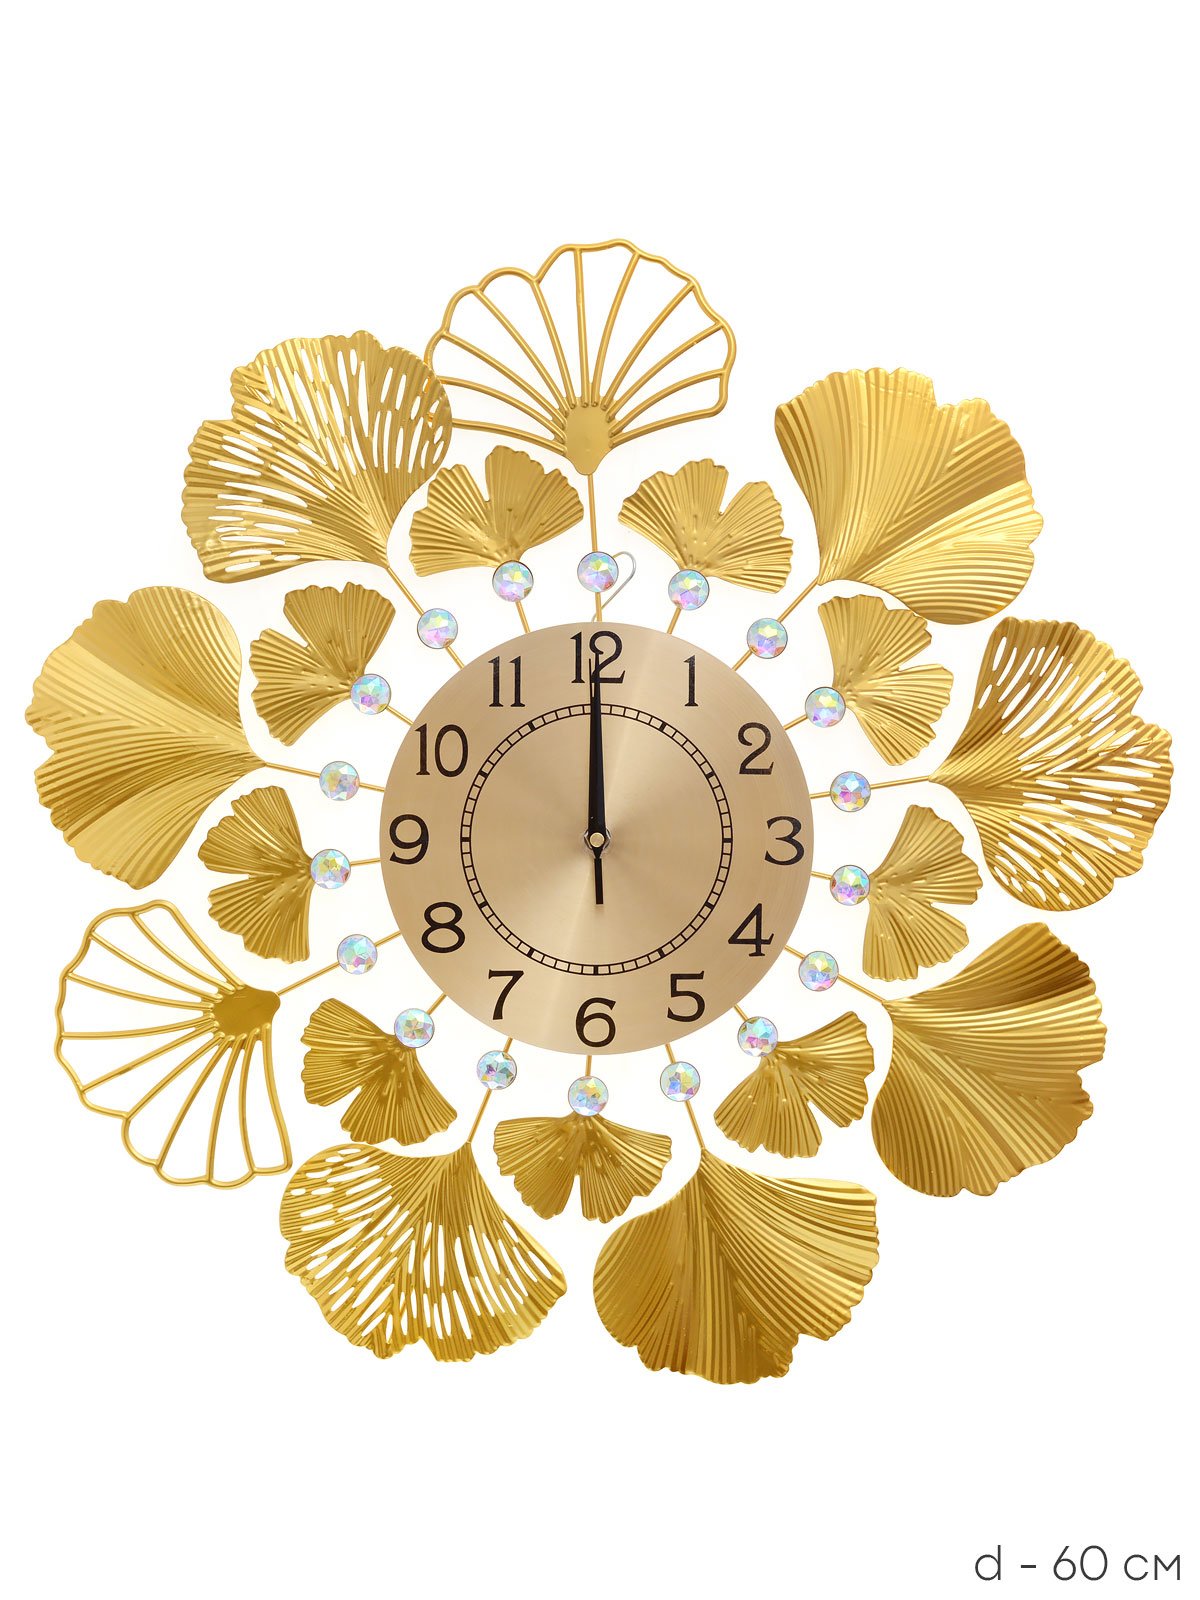 Часы настенные 60 см / yj6464xl3. Часы настенные с маятником золотой узор 4020-001. Купить белые с золотой отделкой настенные часы. Часы настенные 60*3*60 см. Часы настенные 60 см